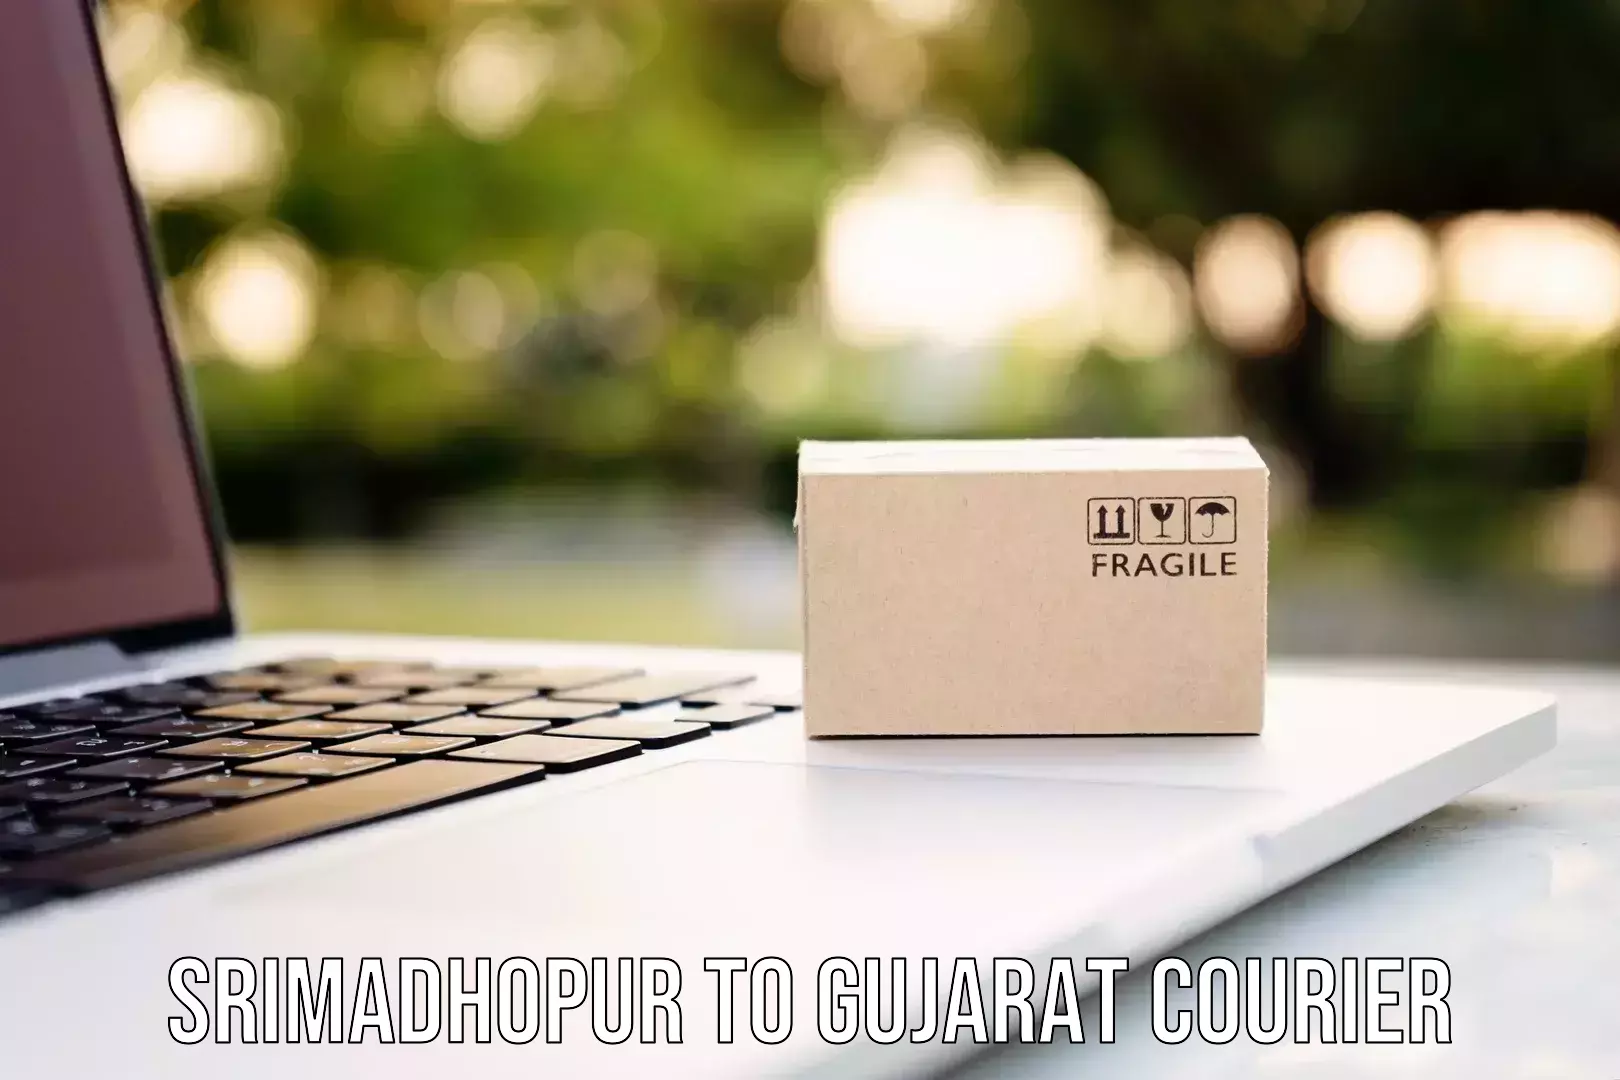 Quality courier partnerships Srimadhopur to Mahuva